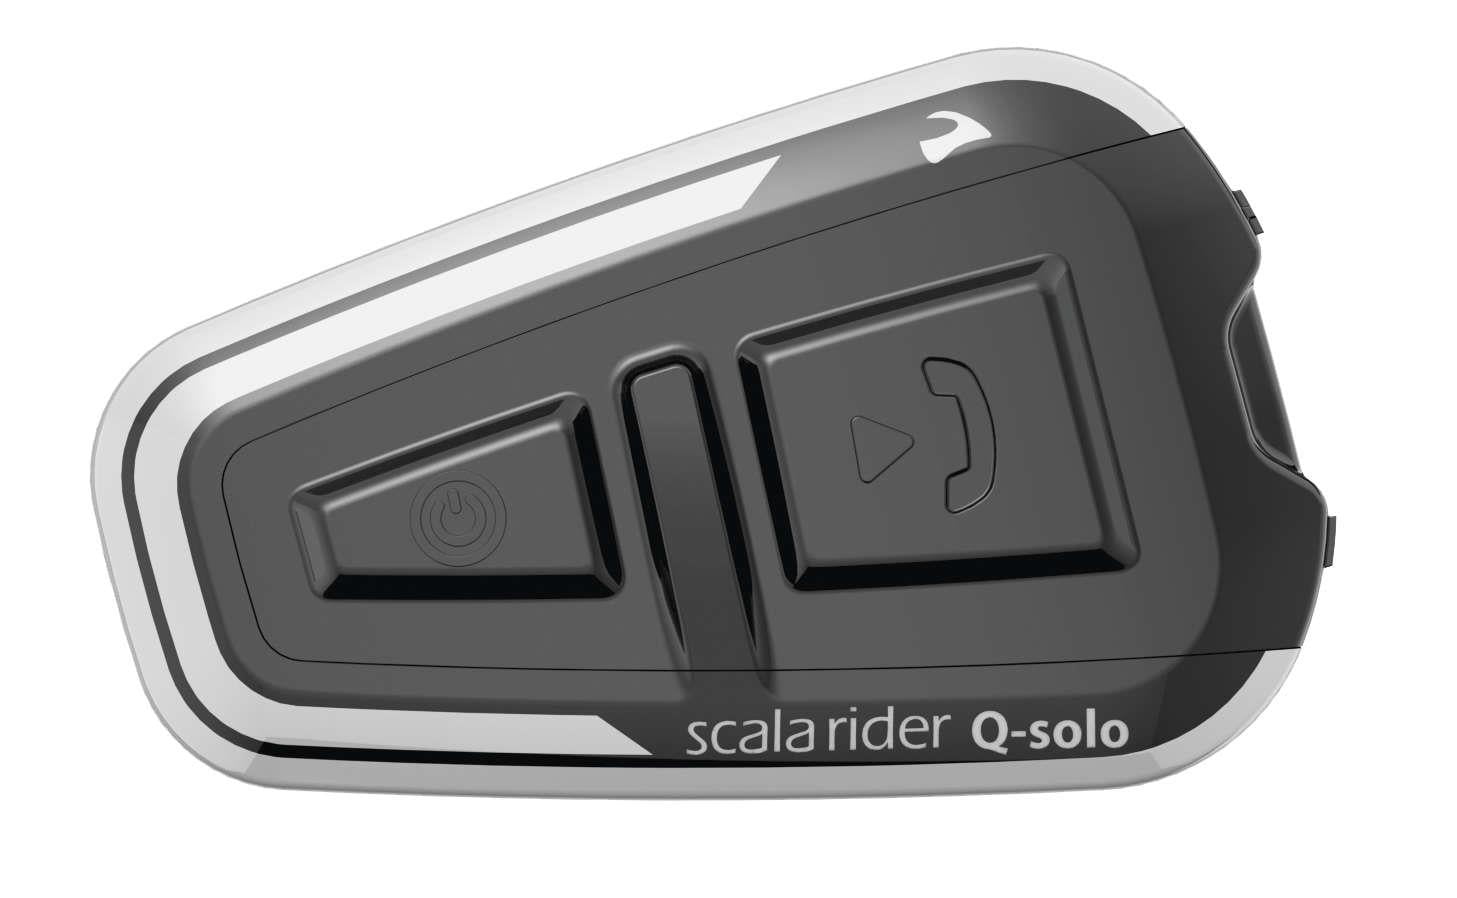 Aanpassen Een hekel hebben aan rijk Cardo Scala Rider Q-Solo made with Bluetooth® technology Headset -  Walmart.com